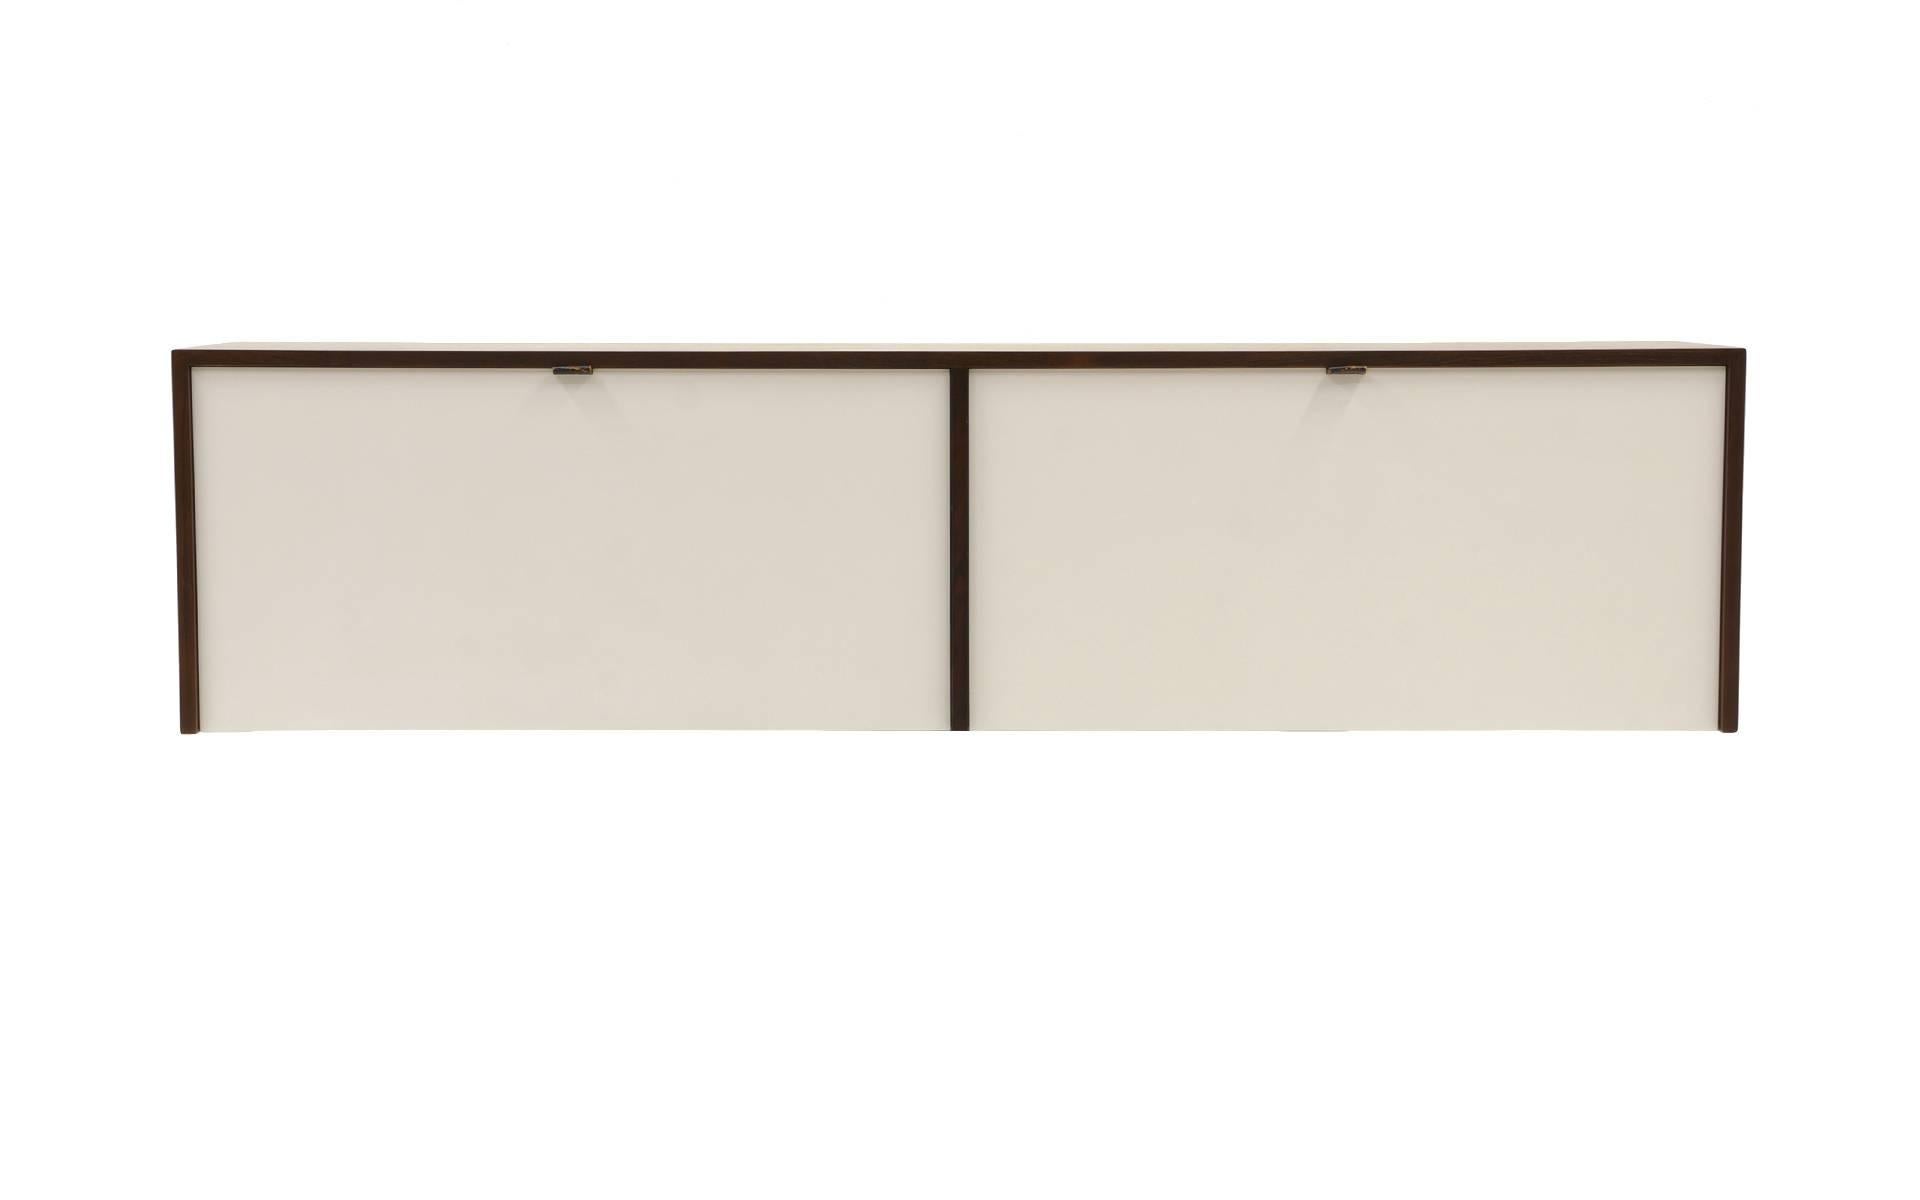 Zwei Wandschränke oder Kredenzen aus Palisanderholz, entworfen von Florence Knoll für Knoll. Frühe Produktion aus brasilianischem Palisanderholz mit weiß lackierten Türen, Innenräumen und Einlegeböden. Ein Schrank mit herunterklappbaren Türen, die